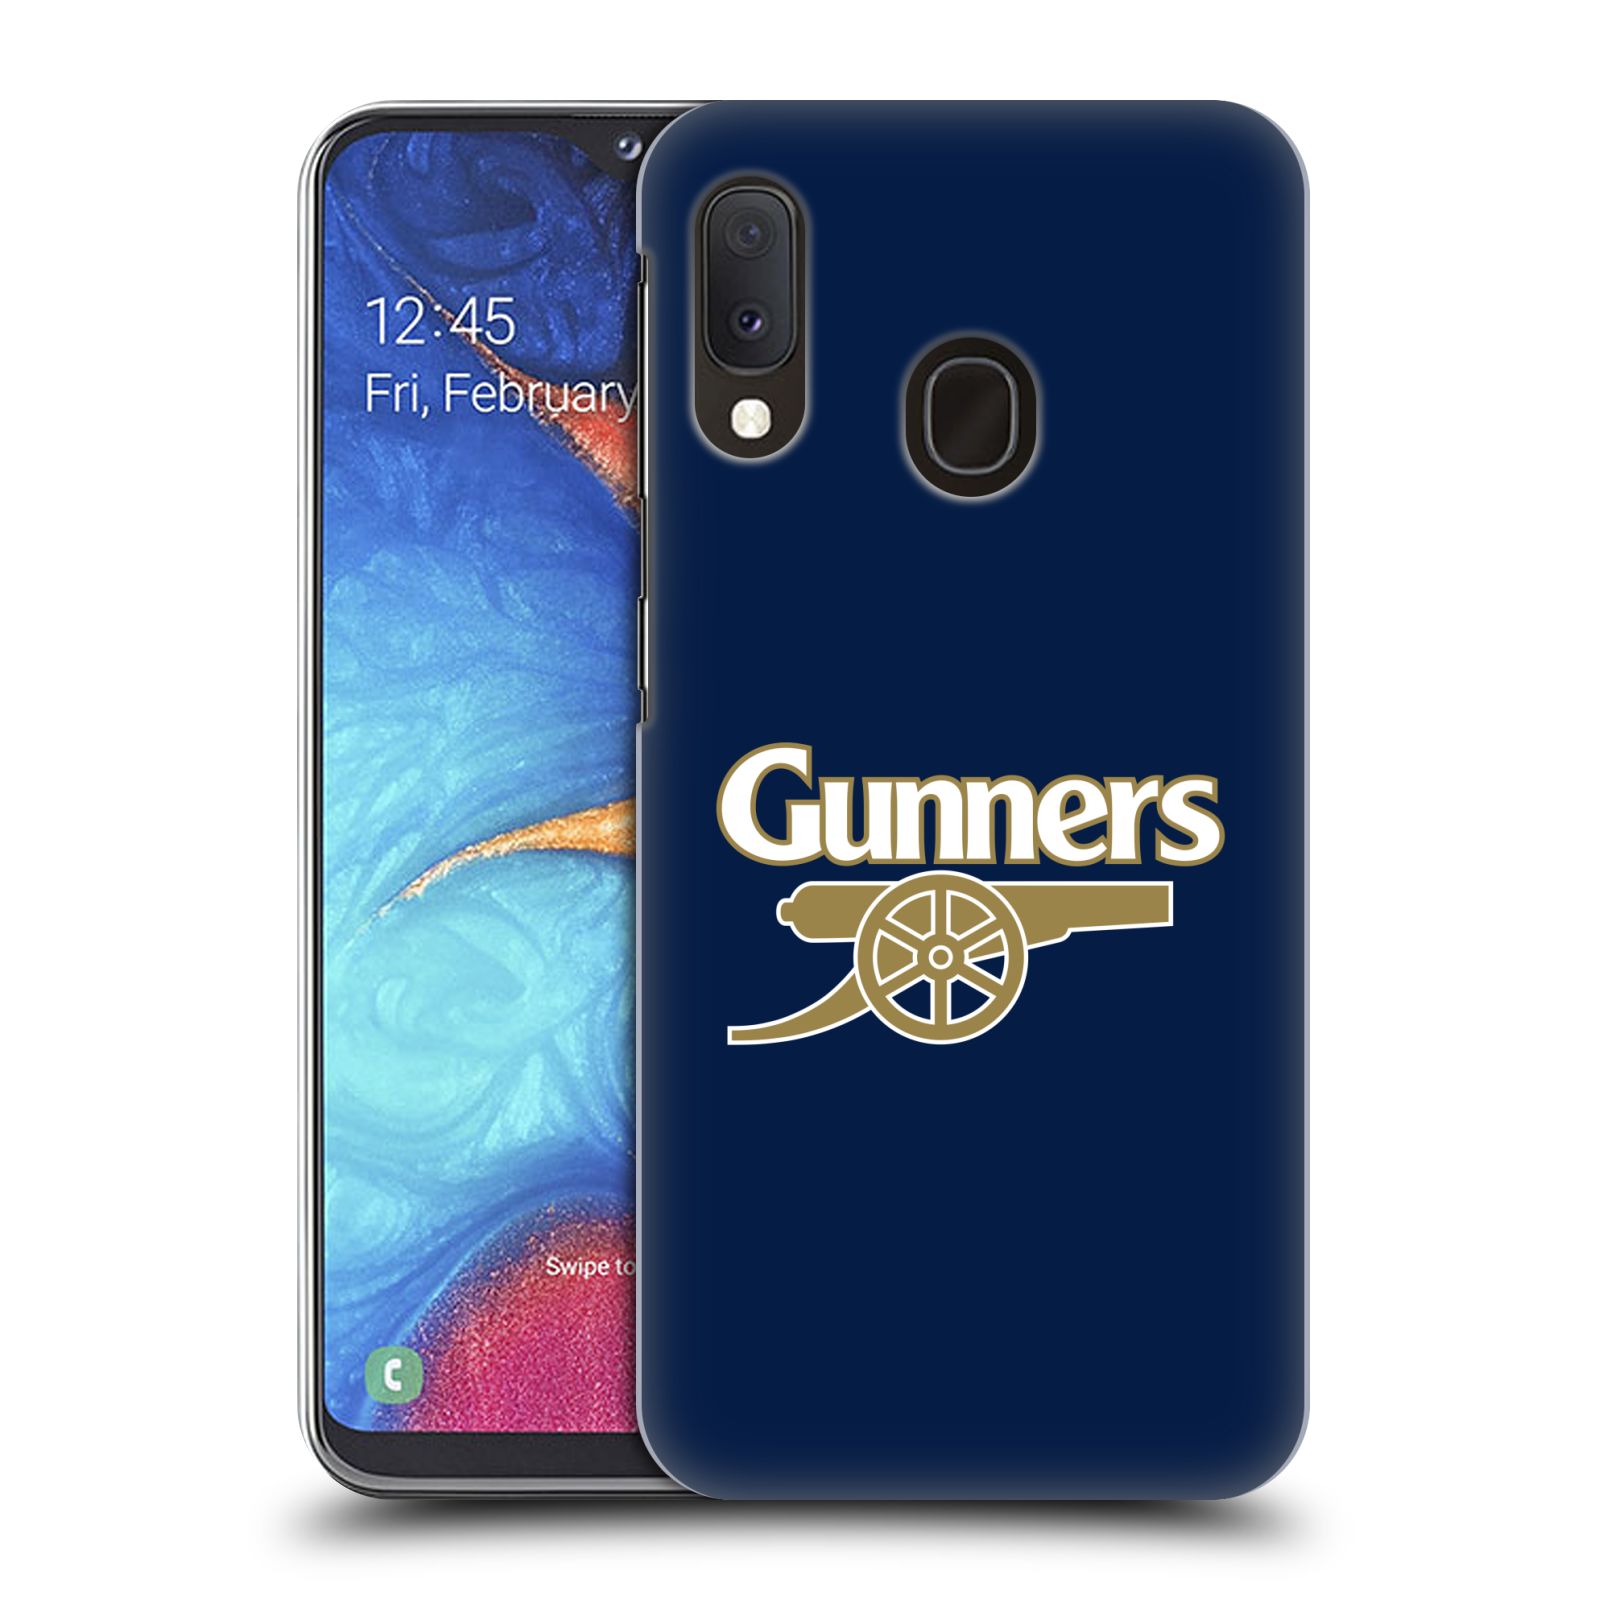 Plastové pouzdro na mobil Samsung Galaxy A20e - Head Case - Arsenal FC - Gunners (Plastový kryt, pouzdro, obal na mobilní telefon s motivem klubu Arsenal FC - Gunners pro Samsung Galaxy A20e A202F Dual SIM)